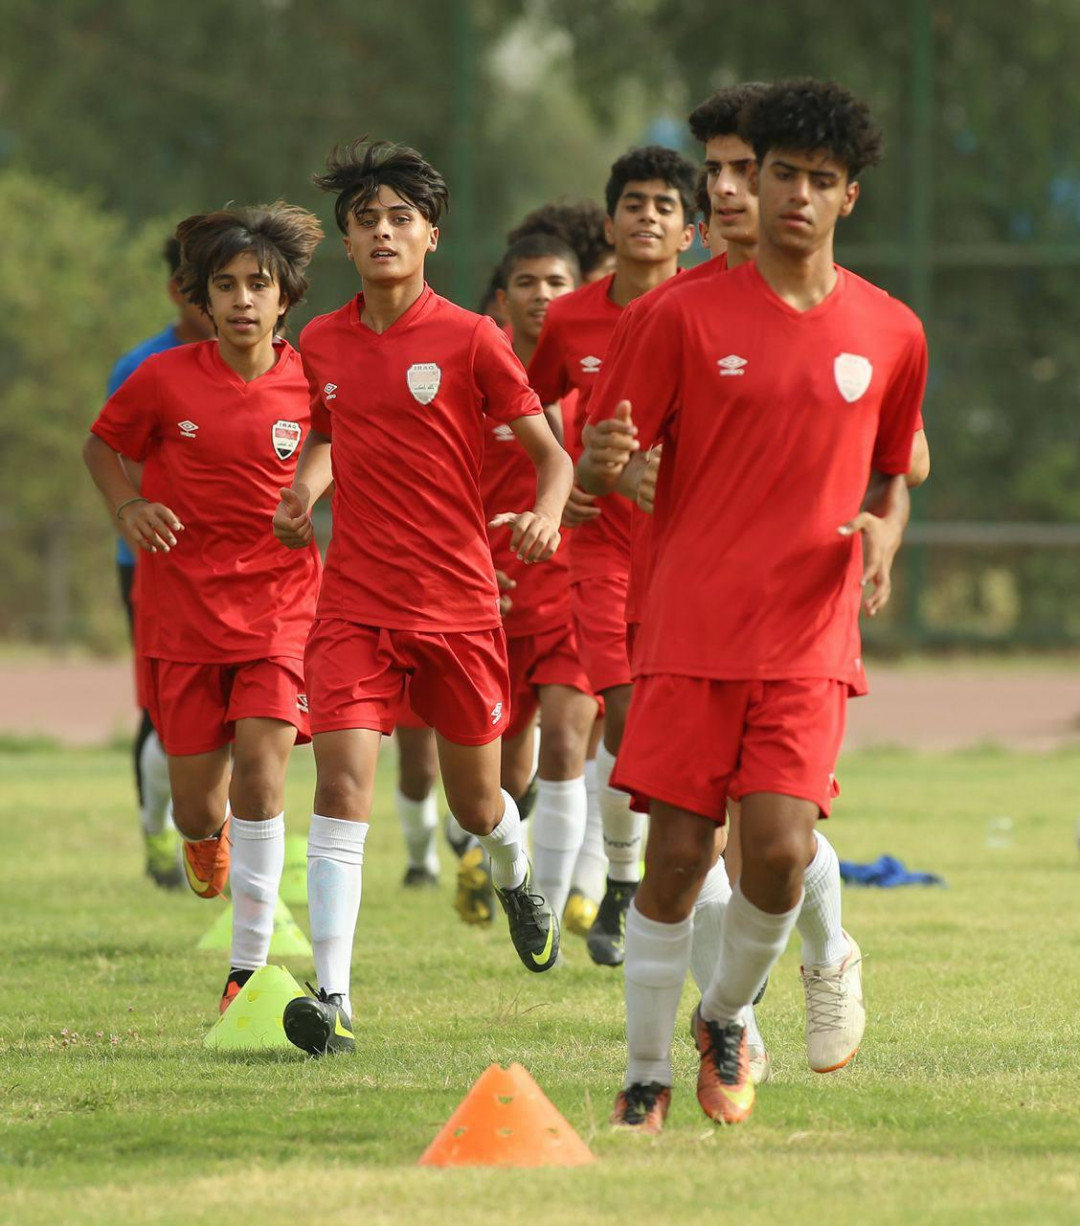 منتخب الناشئين لكرة القدم يباشر تدريباته استعداداً للبطولة العربية